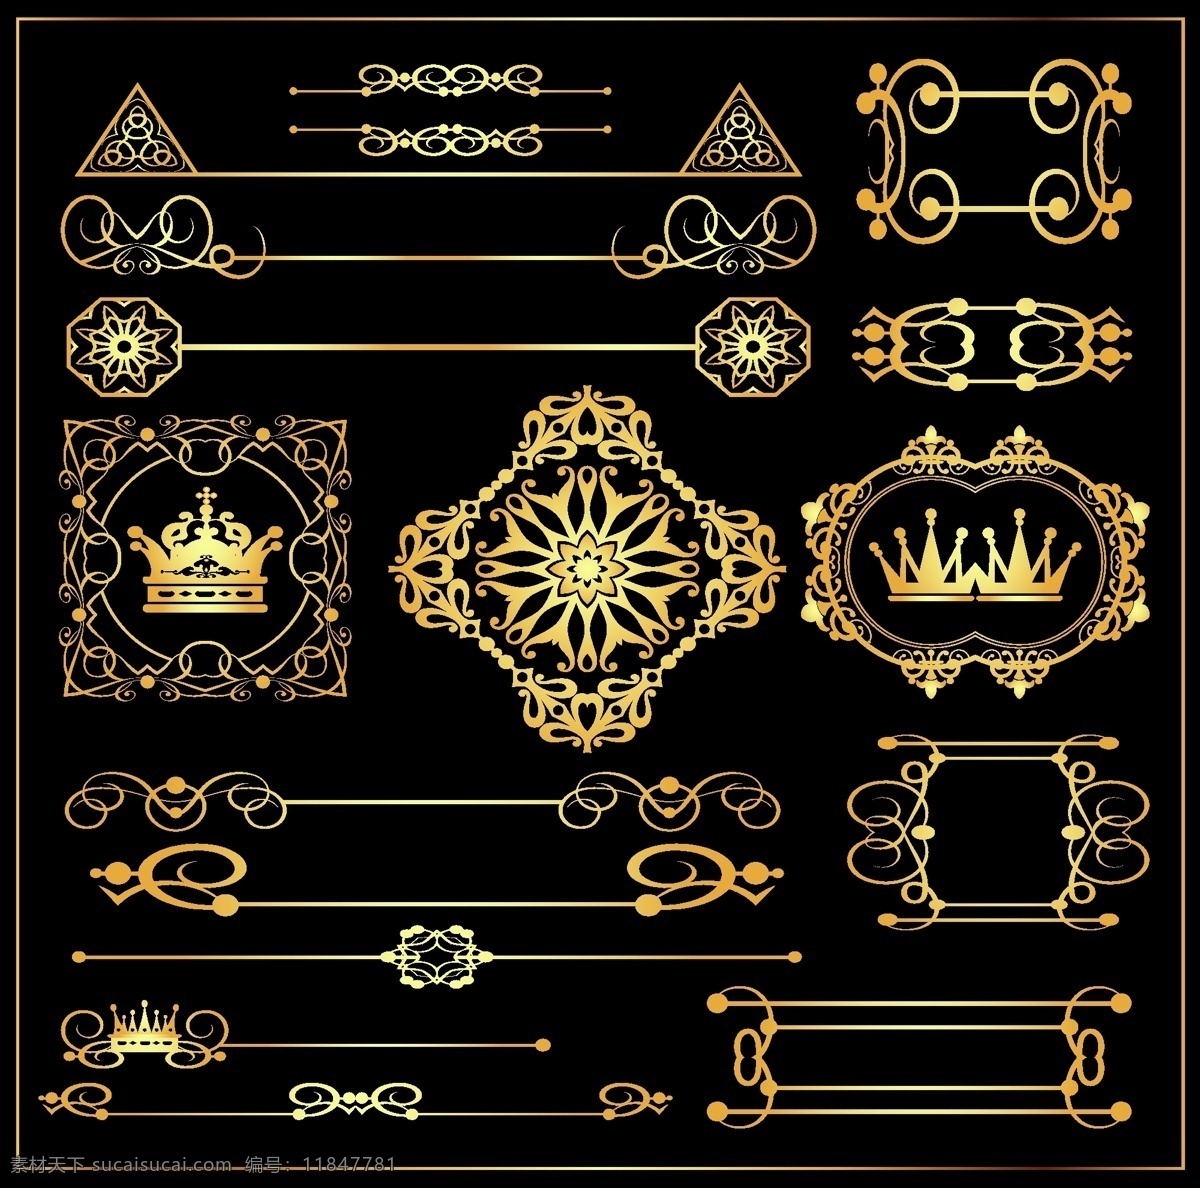 复古 皇冠 饰品 网页设计 标签 金色 矢量素材 设计素材